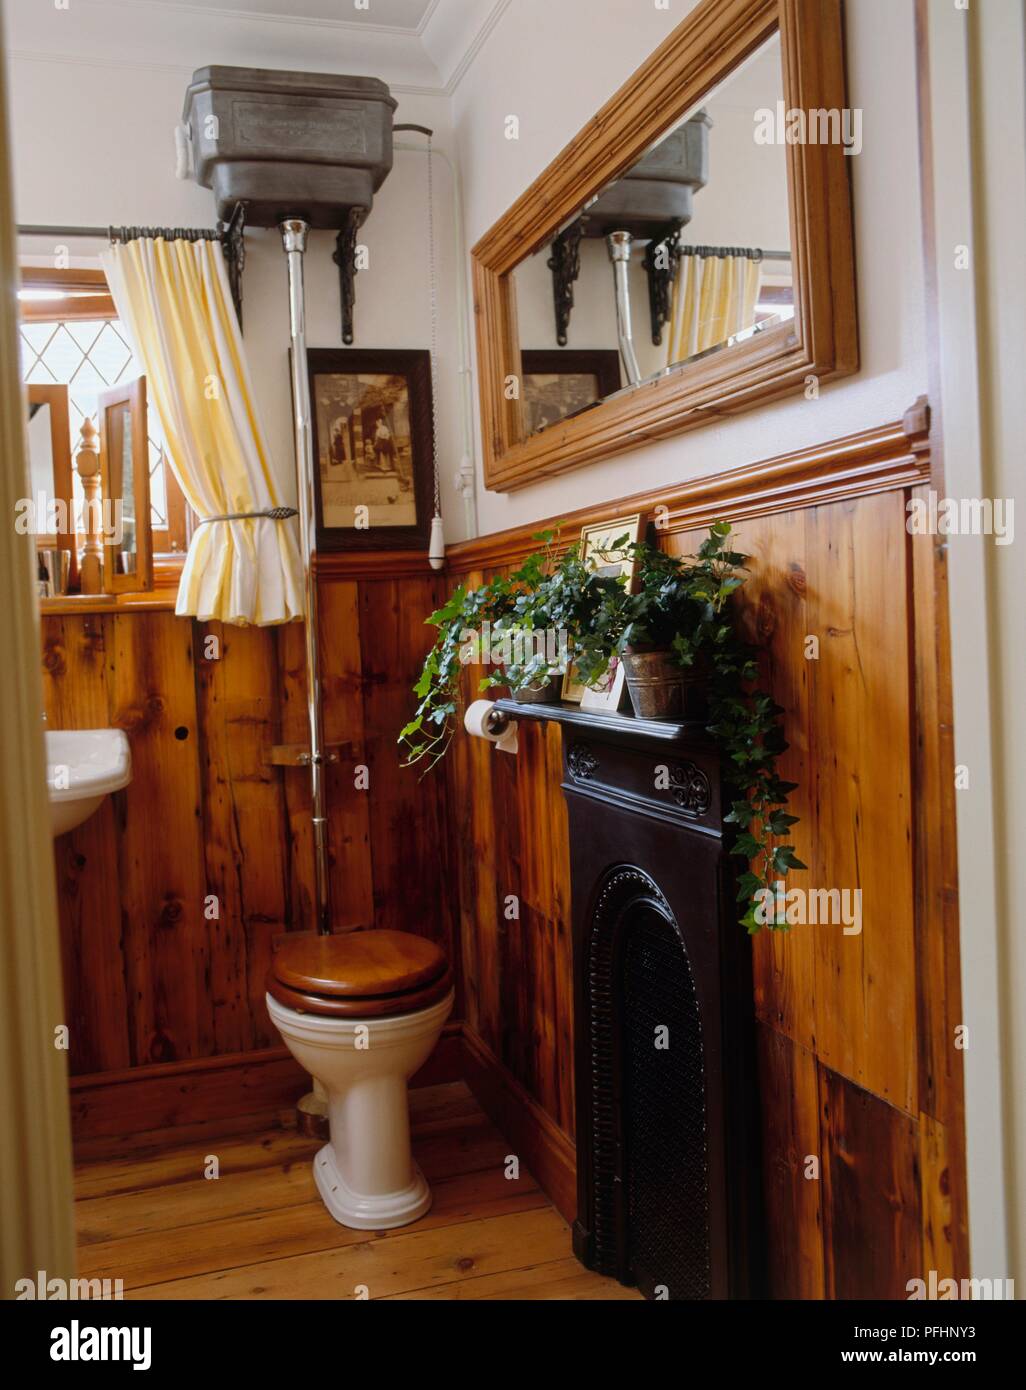 Wc im Badezimmer mit einem hölzernen beenden und dekorativen Kamin Stockfoto